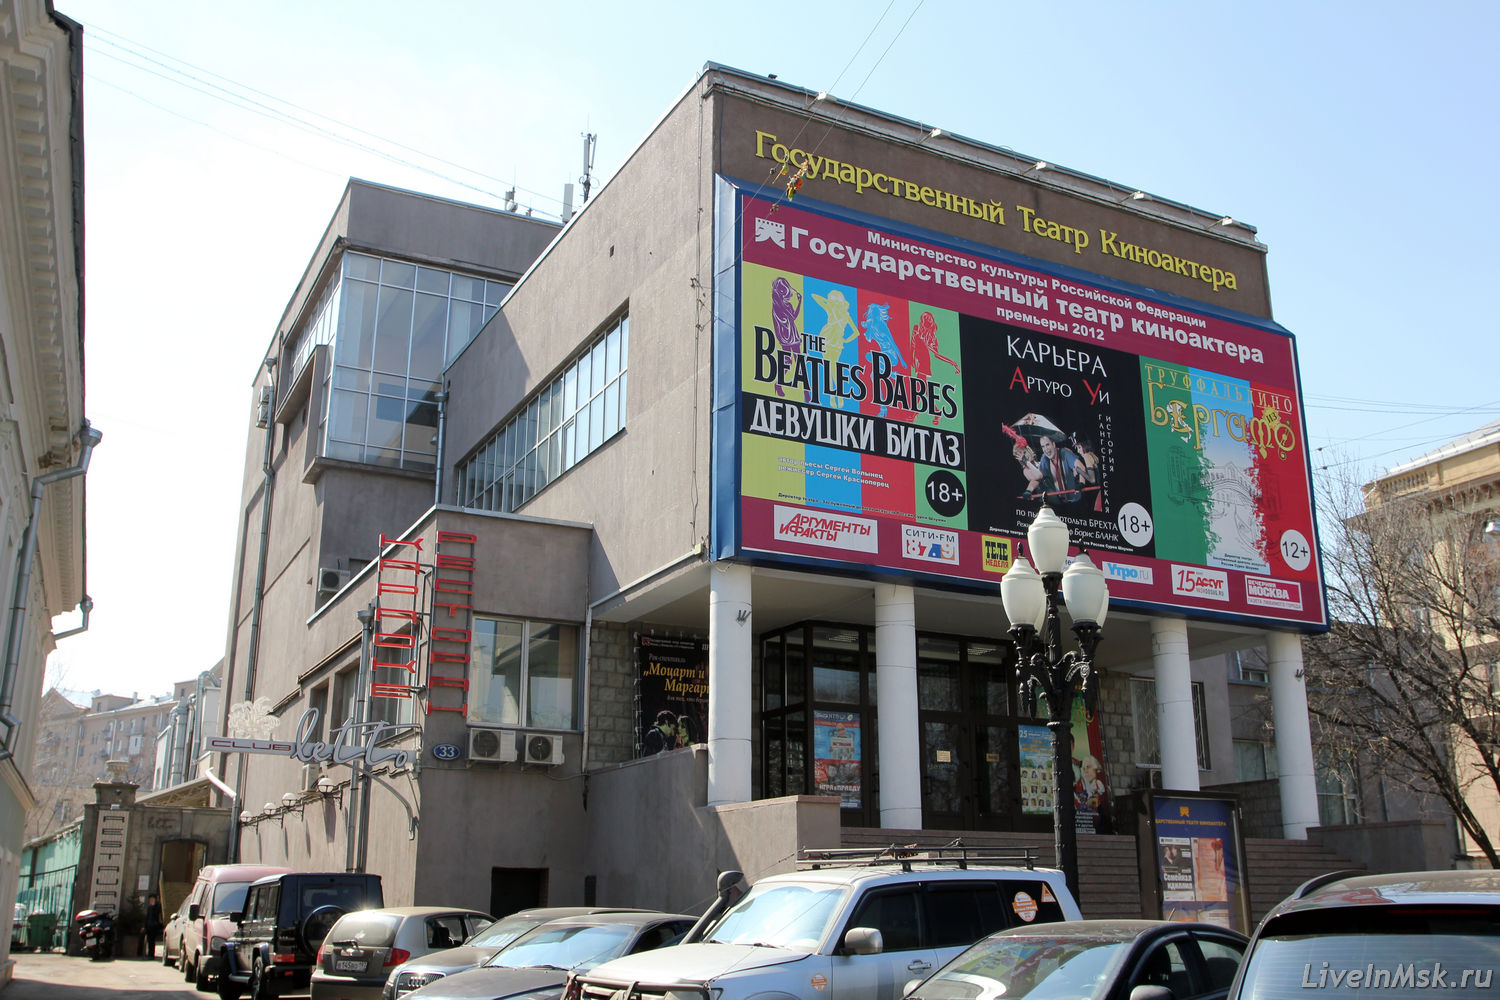 Театр Киноактера, фото 2014 года